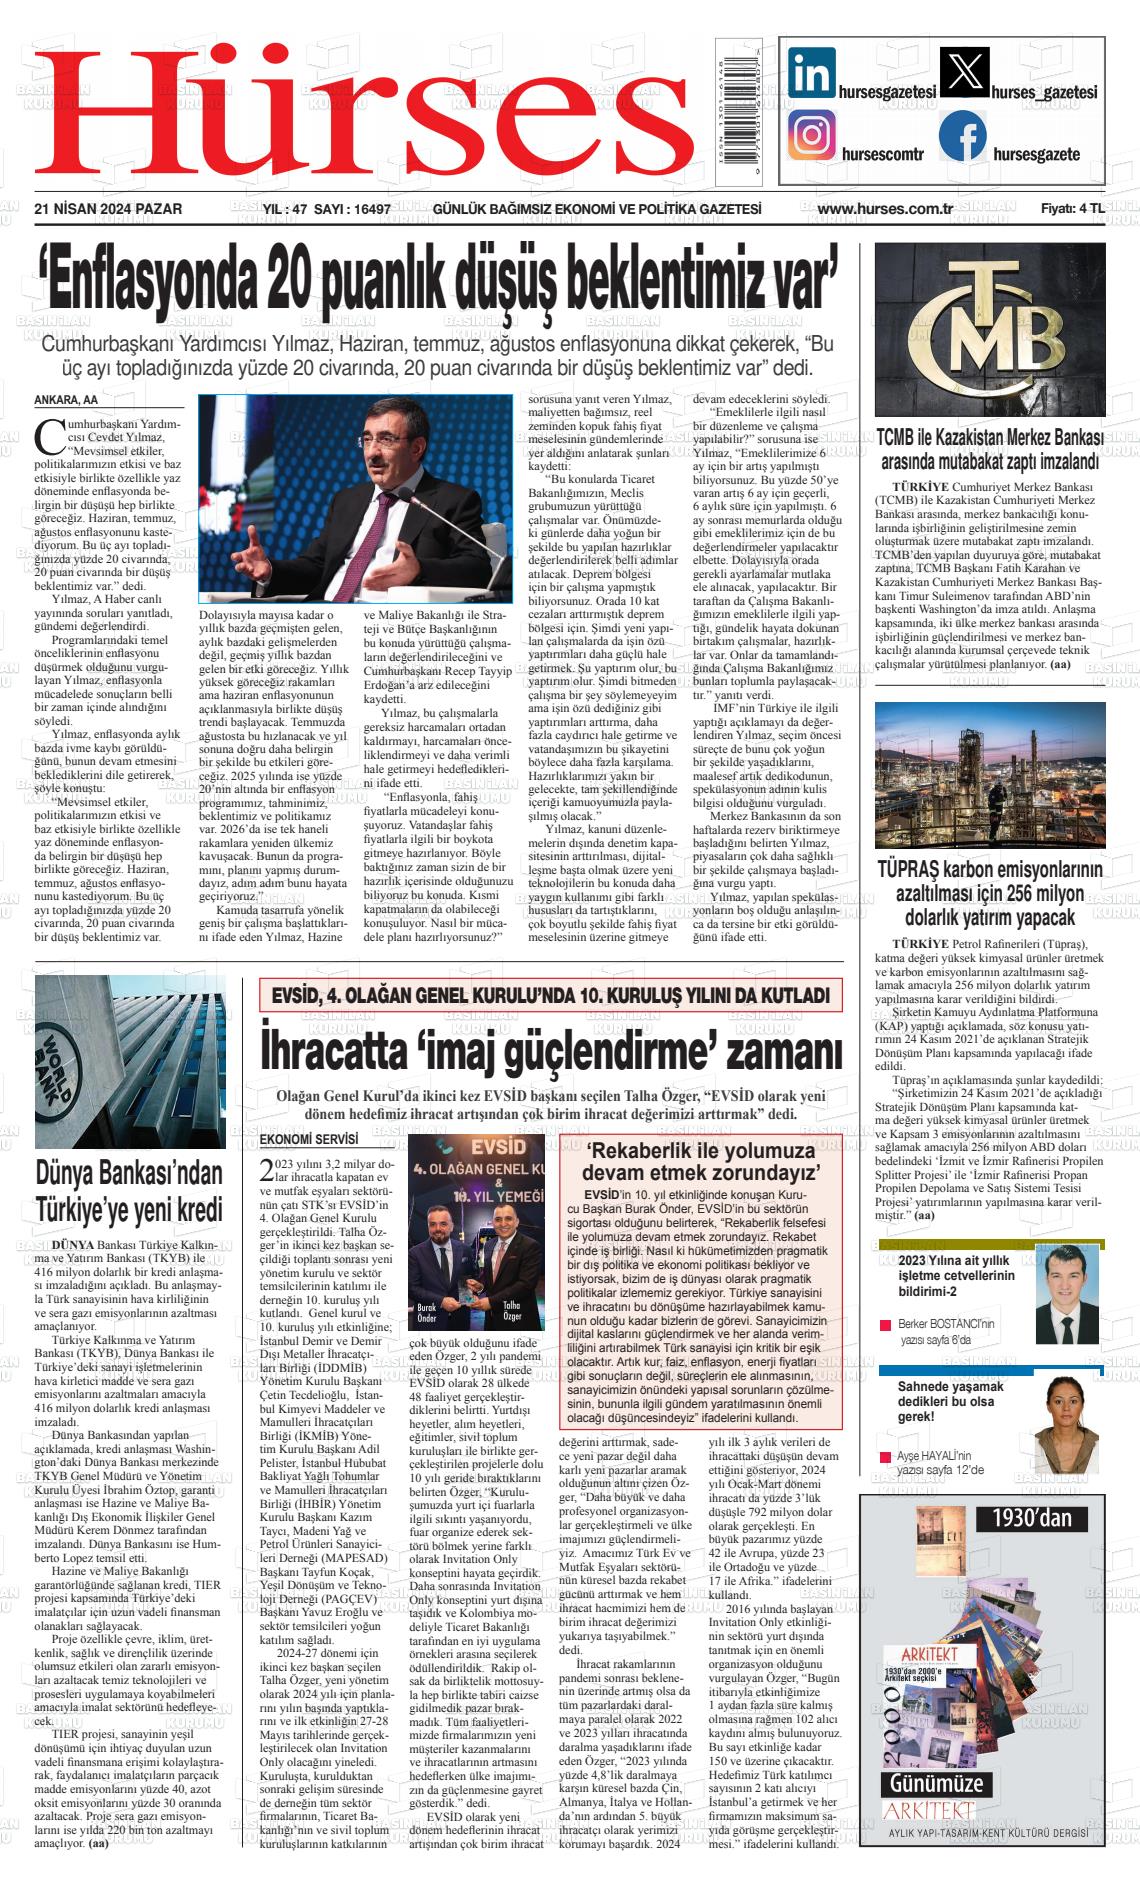 23 Nisan 2024 İstanbul Hürses gazetesi Gazete Manşeti